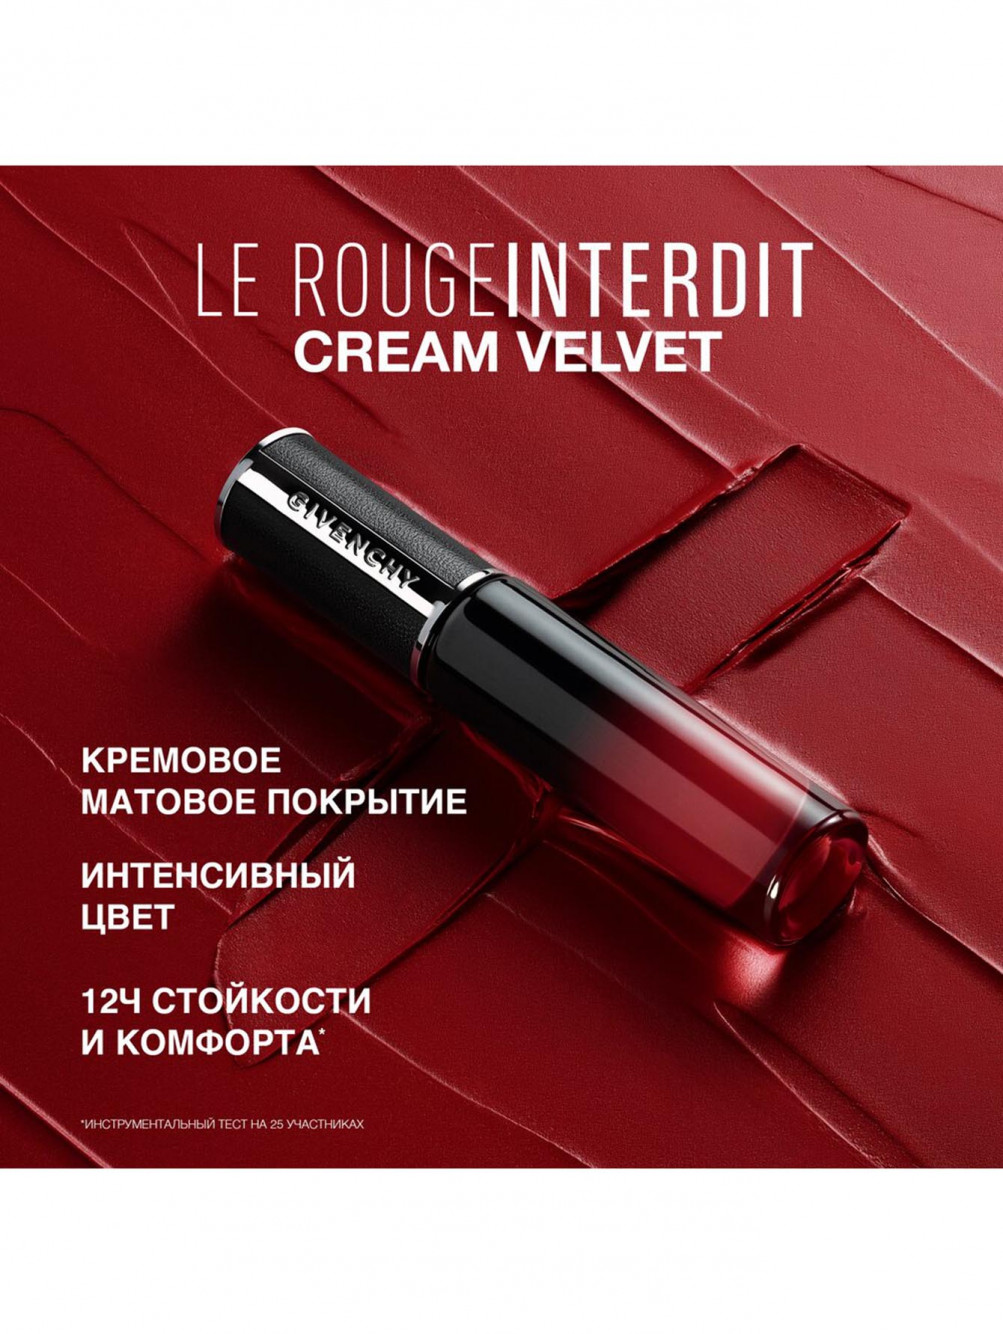 Жидкая матовая помада для губ Le Rouge Interdit Cream Velvet, оттенок 53, 6,5 мл - Обтравка4